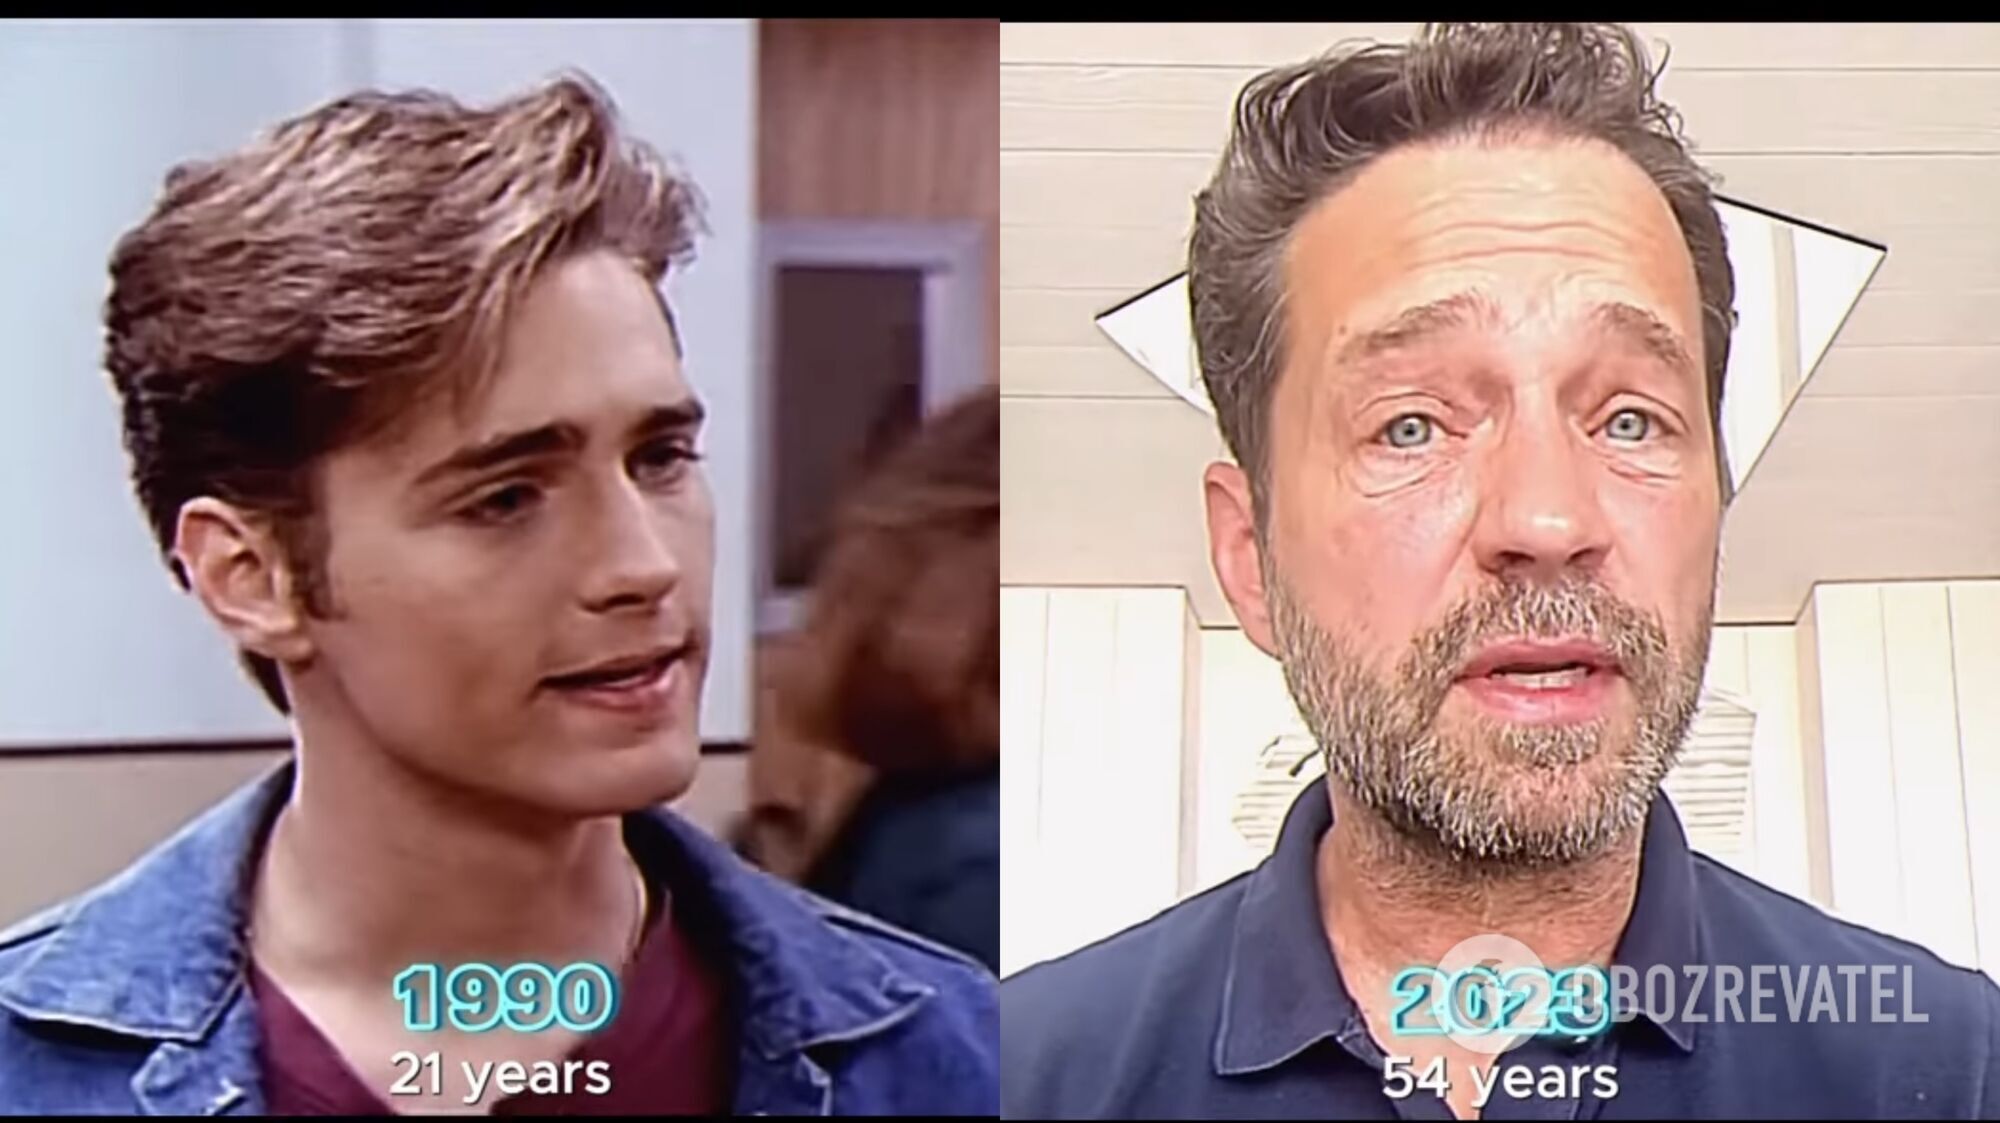 "Кучерявый в свои 60 выглядит идеально": как состарились актеры из культового сериала "Беверли-Хиллз, 90210"